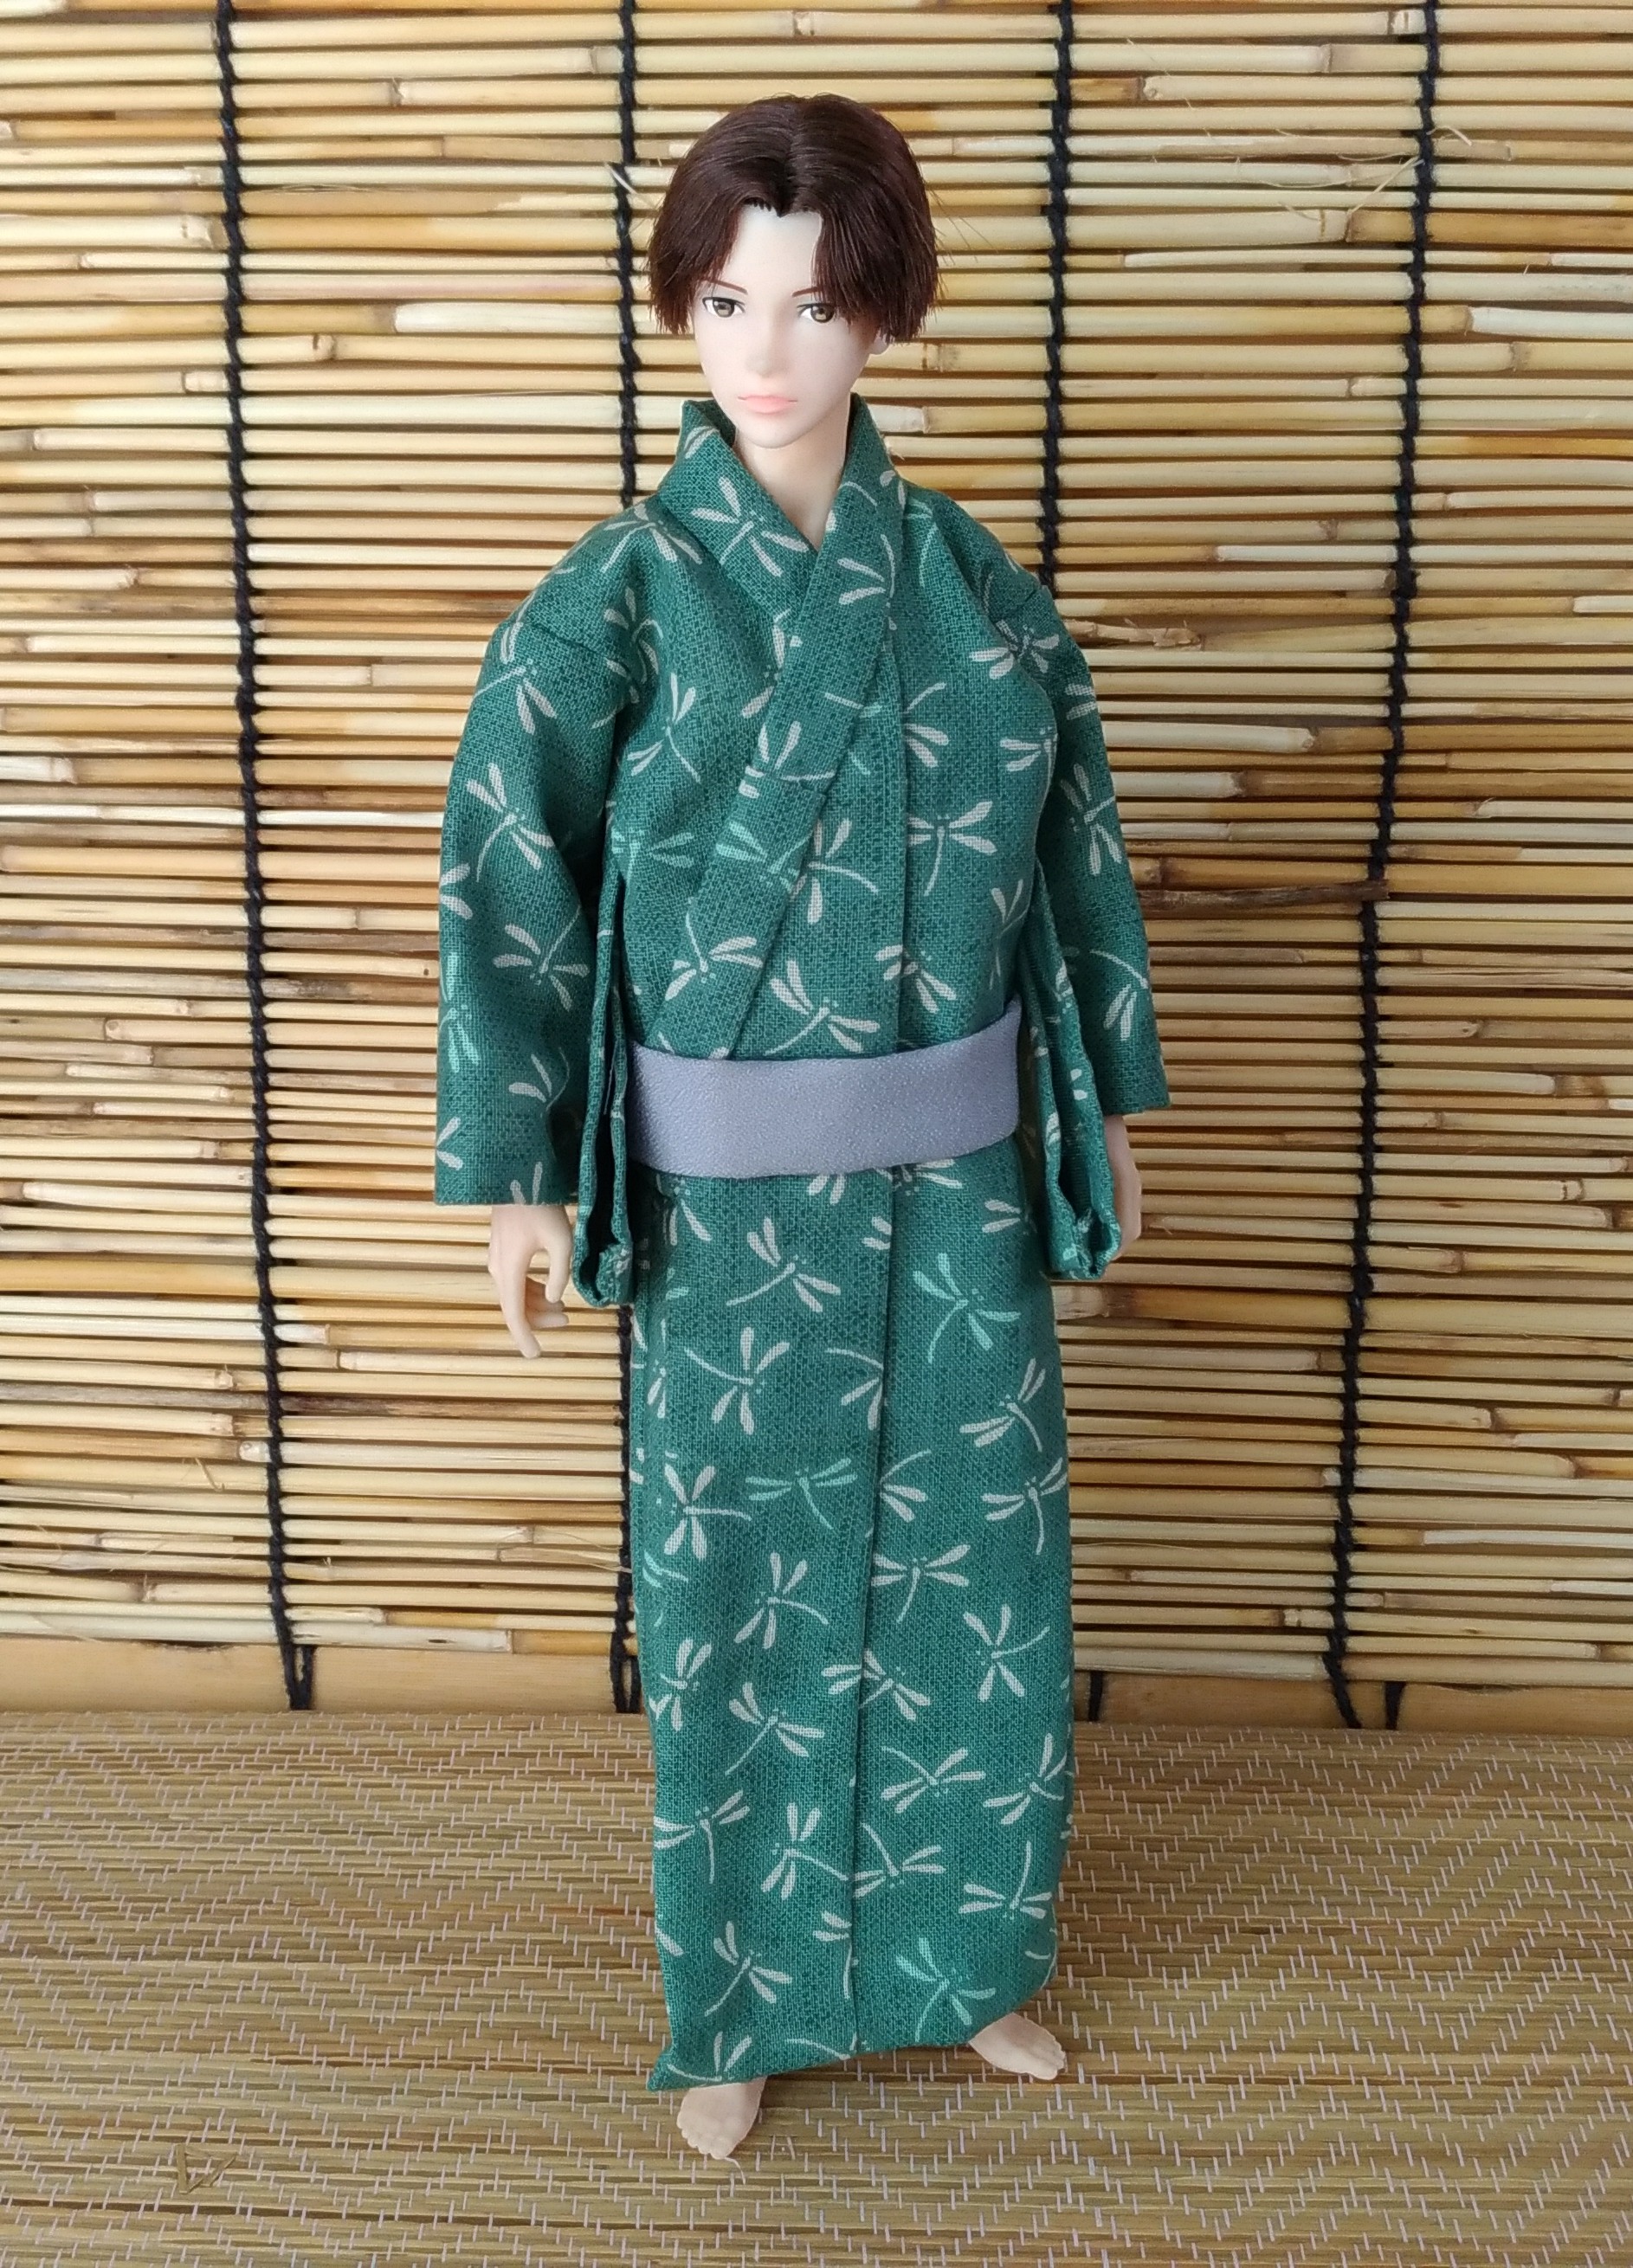 蜻蛉の浴衣 若竹 28cm男子ドール着物 Iichi ハンドメイド クラフト作品 手仕事品の通販